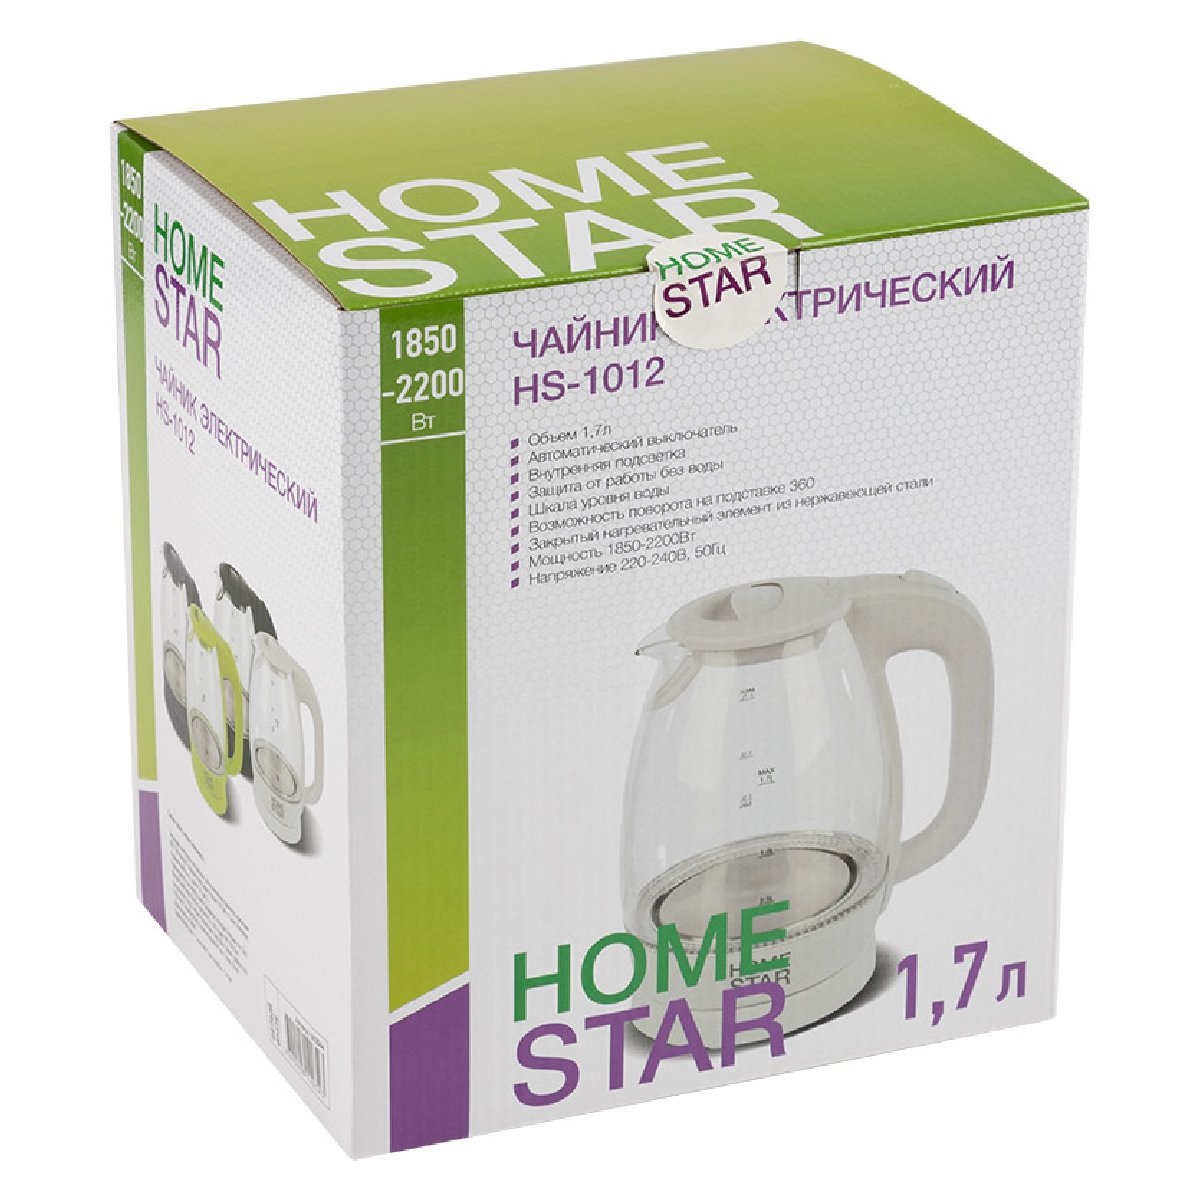 Homestar HS-1012 чайник электрический дисковый, 1.7л, 1850-2200Вт, стеклянный, белый